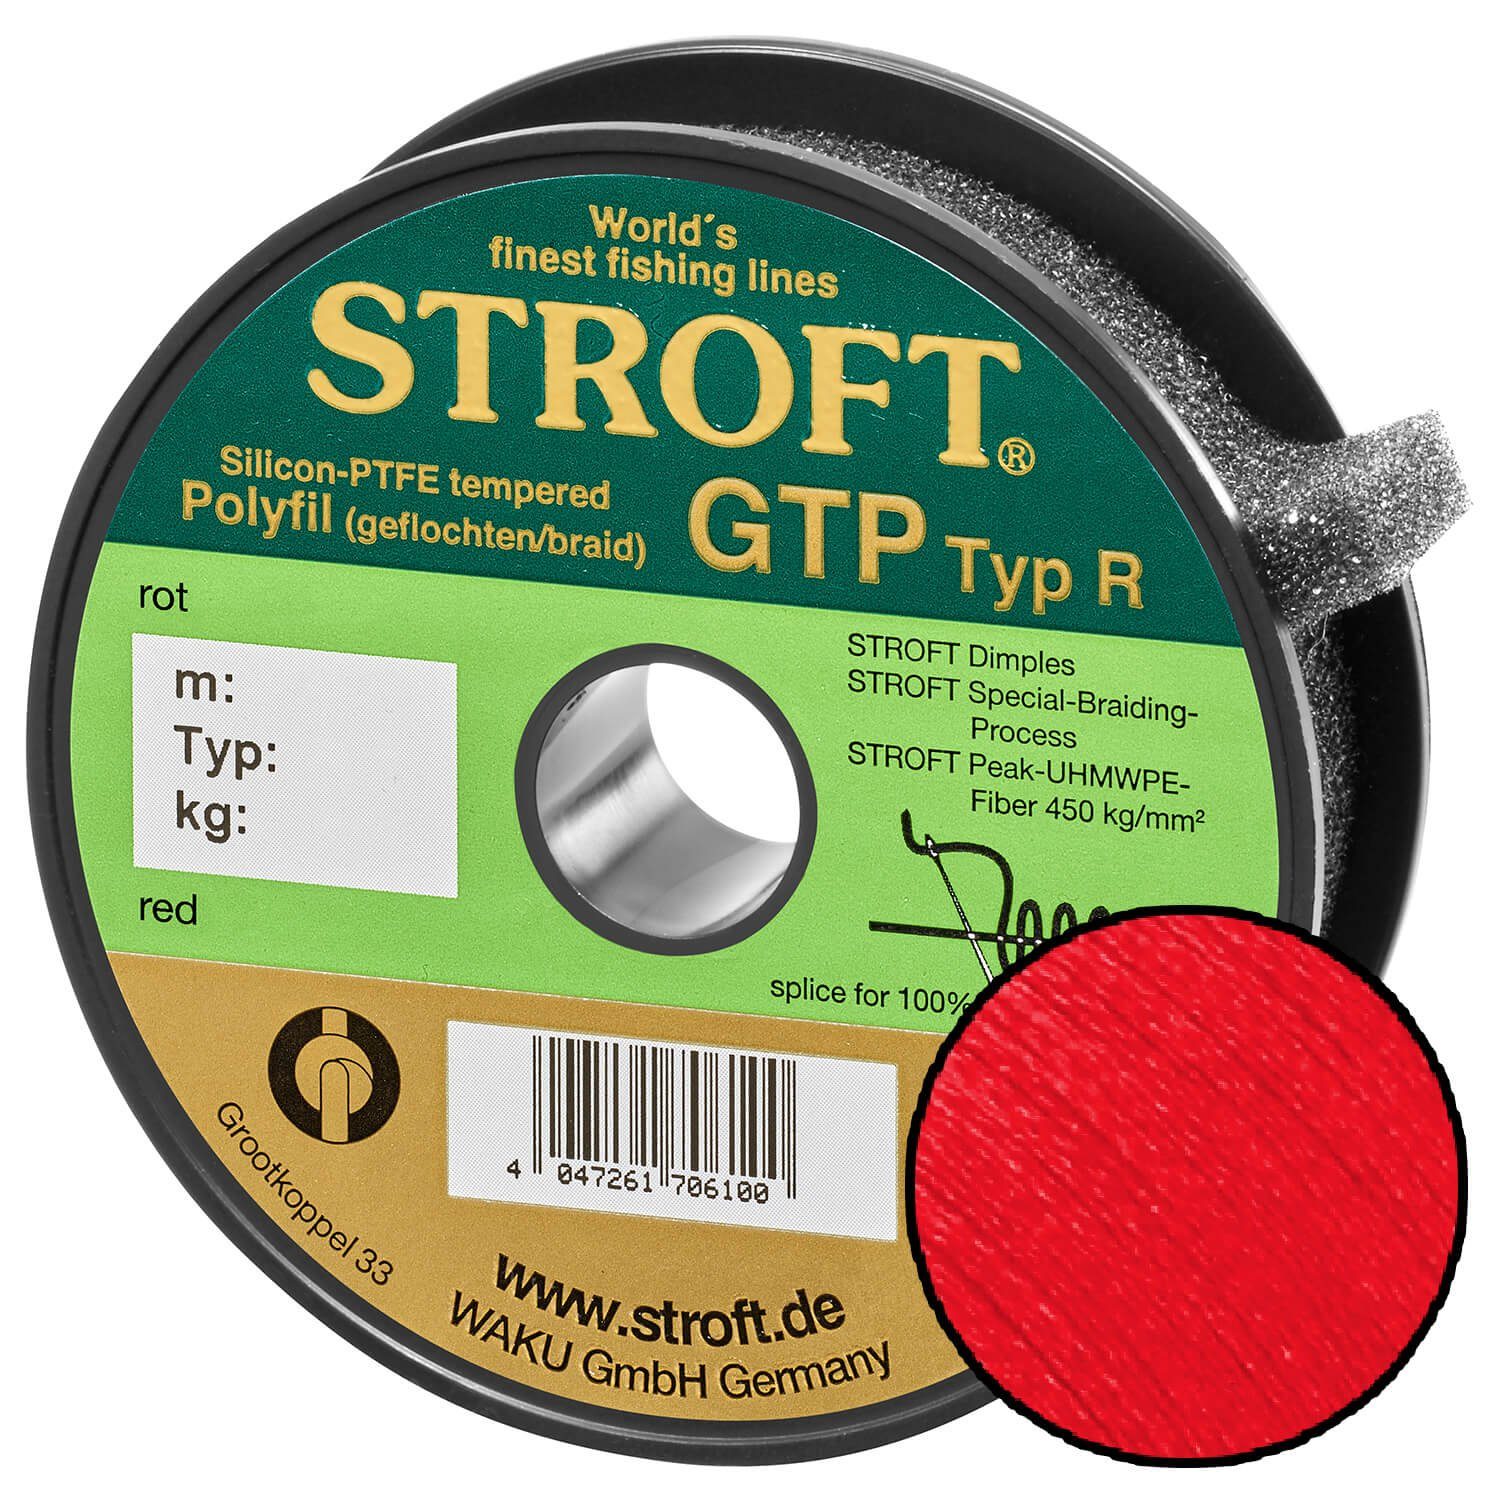 Stroft Angelschnur STROFT GTP Typ R Geflochtene Angelschnur 125m rot, 125 m Länge, 0.18 mm Fadendurchmesser, (1-St), 5.5kg Tragkraft